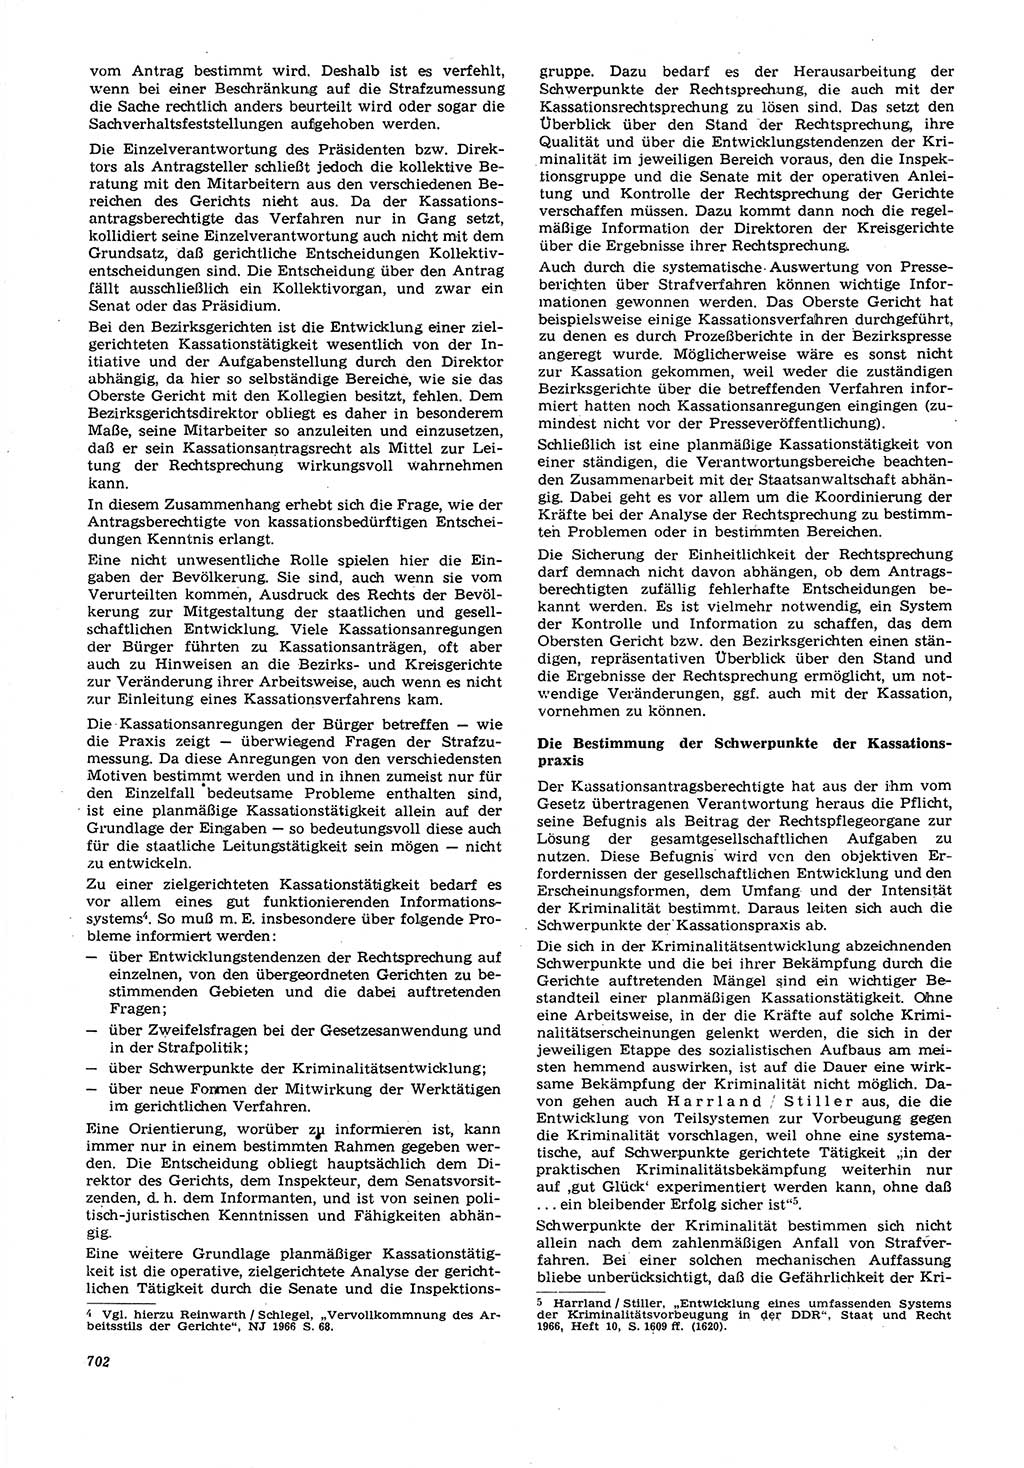 Neue Justiz (NJ), Zeitschrift für Recht und Rechtswissenschaft [Deutsche Demokratische Republik (DDR)], 21. Jahrgang 1967, Seite 702 (NJ DDR 1967, S. 702)